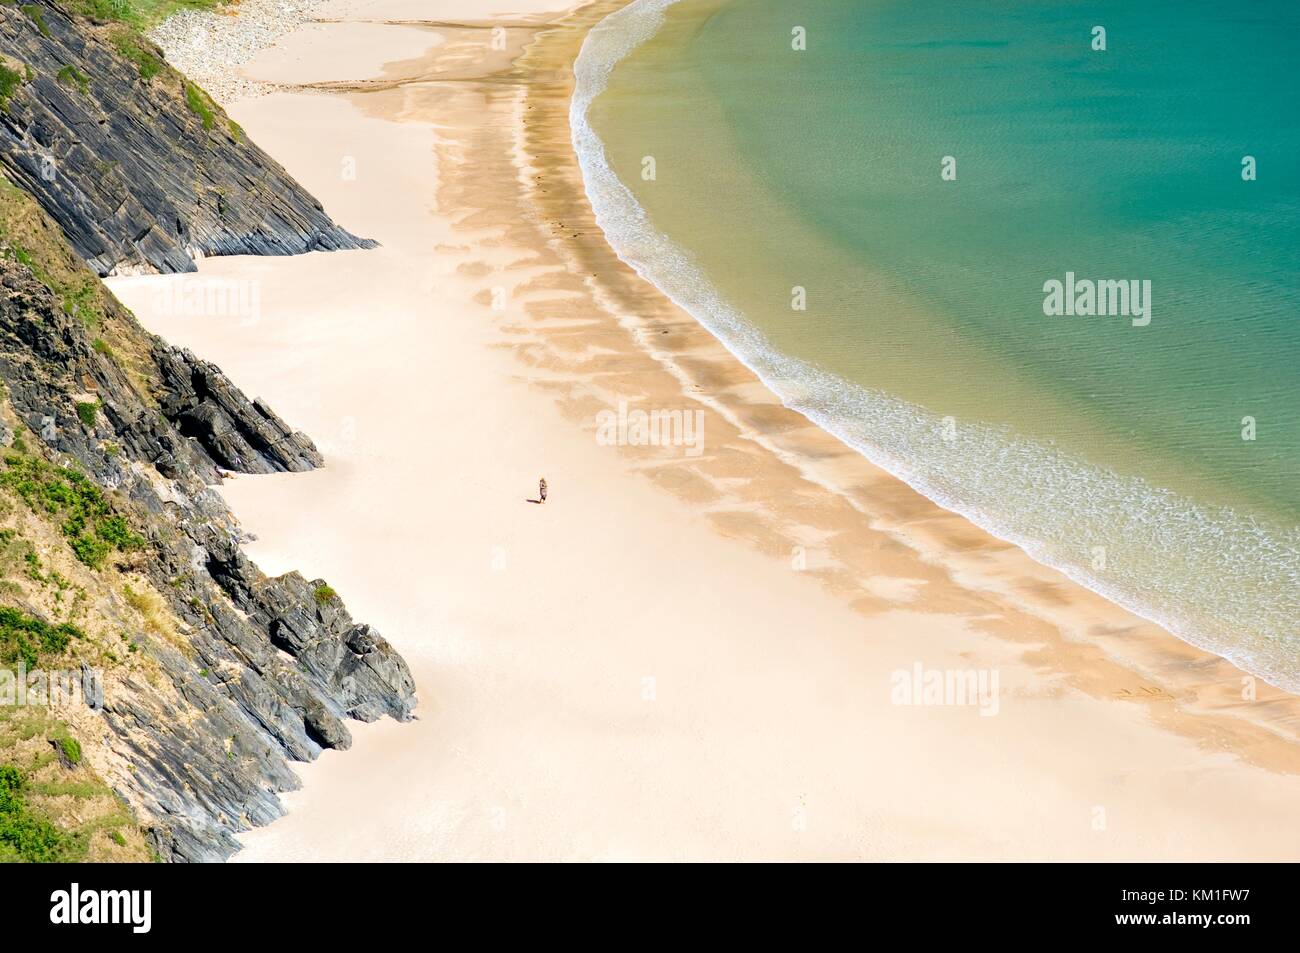 Frau Wandern auf einsamen Silver Strand Strand von malin Beg, Dar es Salaam, County Donegal. West End von Slieve League Cliffs. Stockfoto